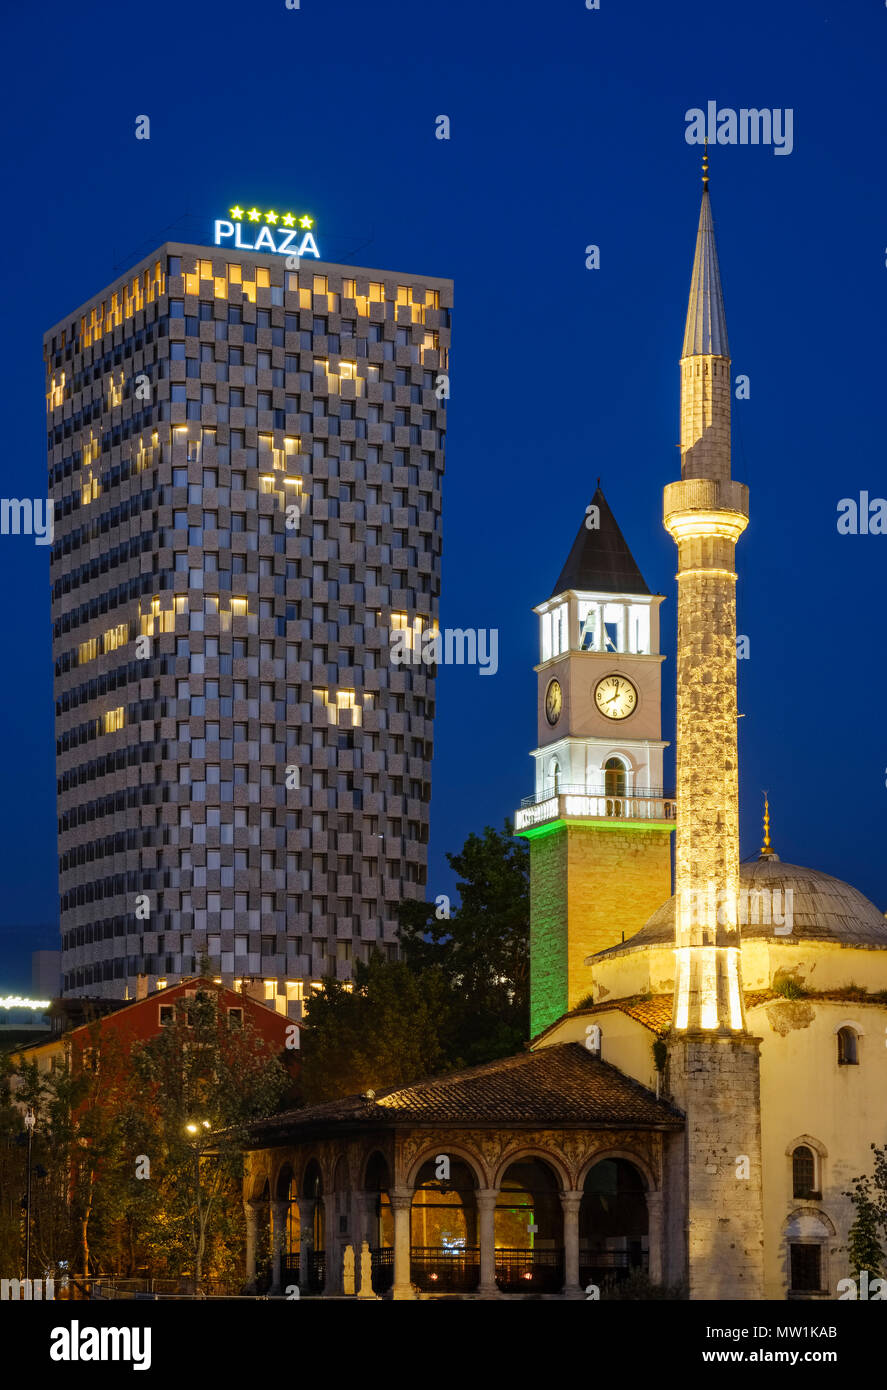 Mosquée Ethem-Bey, Tour de l'horloge et TID Tower Hotel Plaza, vision de nuit, Tirana, Albanie Banque D'Images